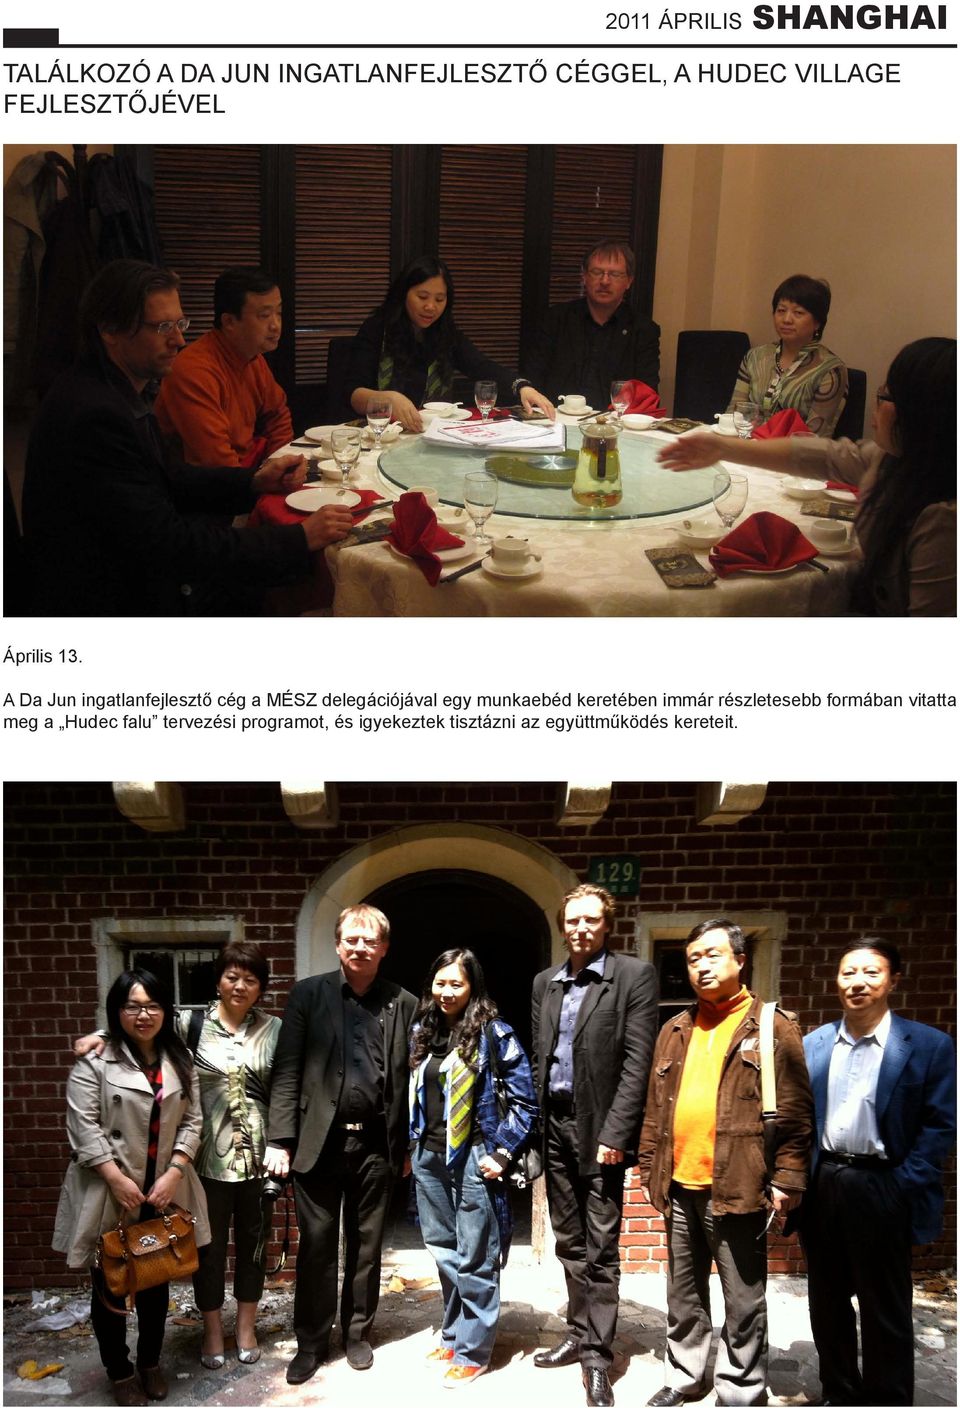 A Da Jun ingatlanfejlesztő cég a MÉSZ delegációjával egy munkaebéd